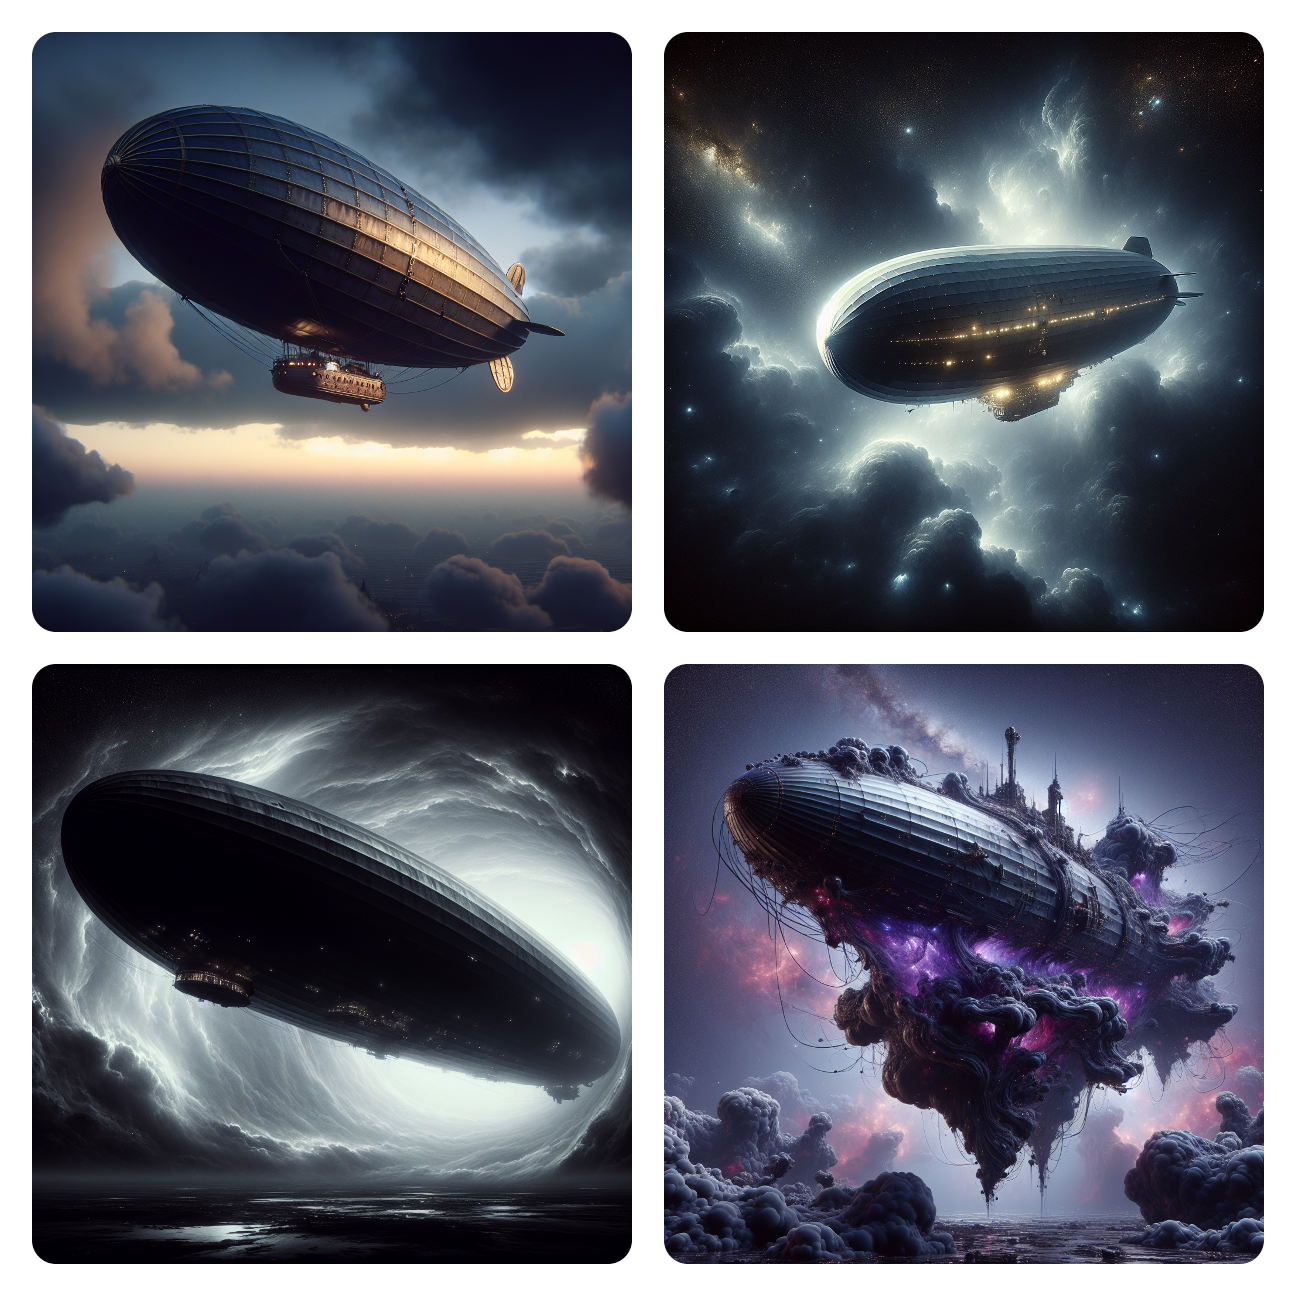 Image: Zeppelins in the Zero Zone